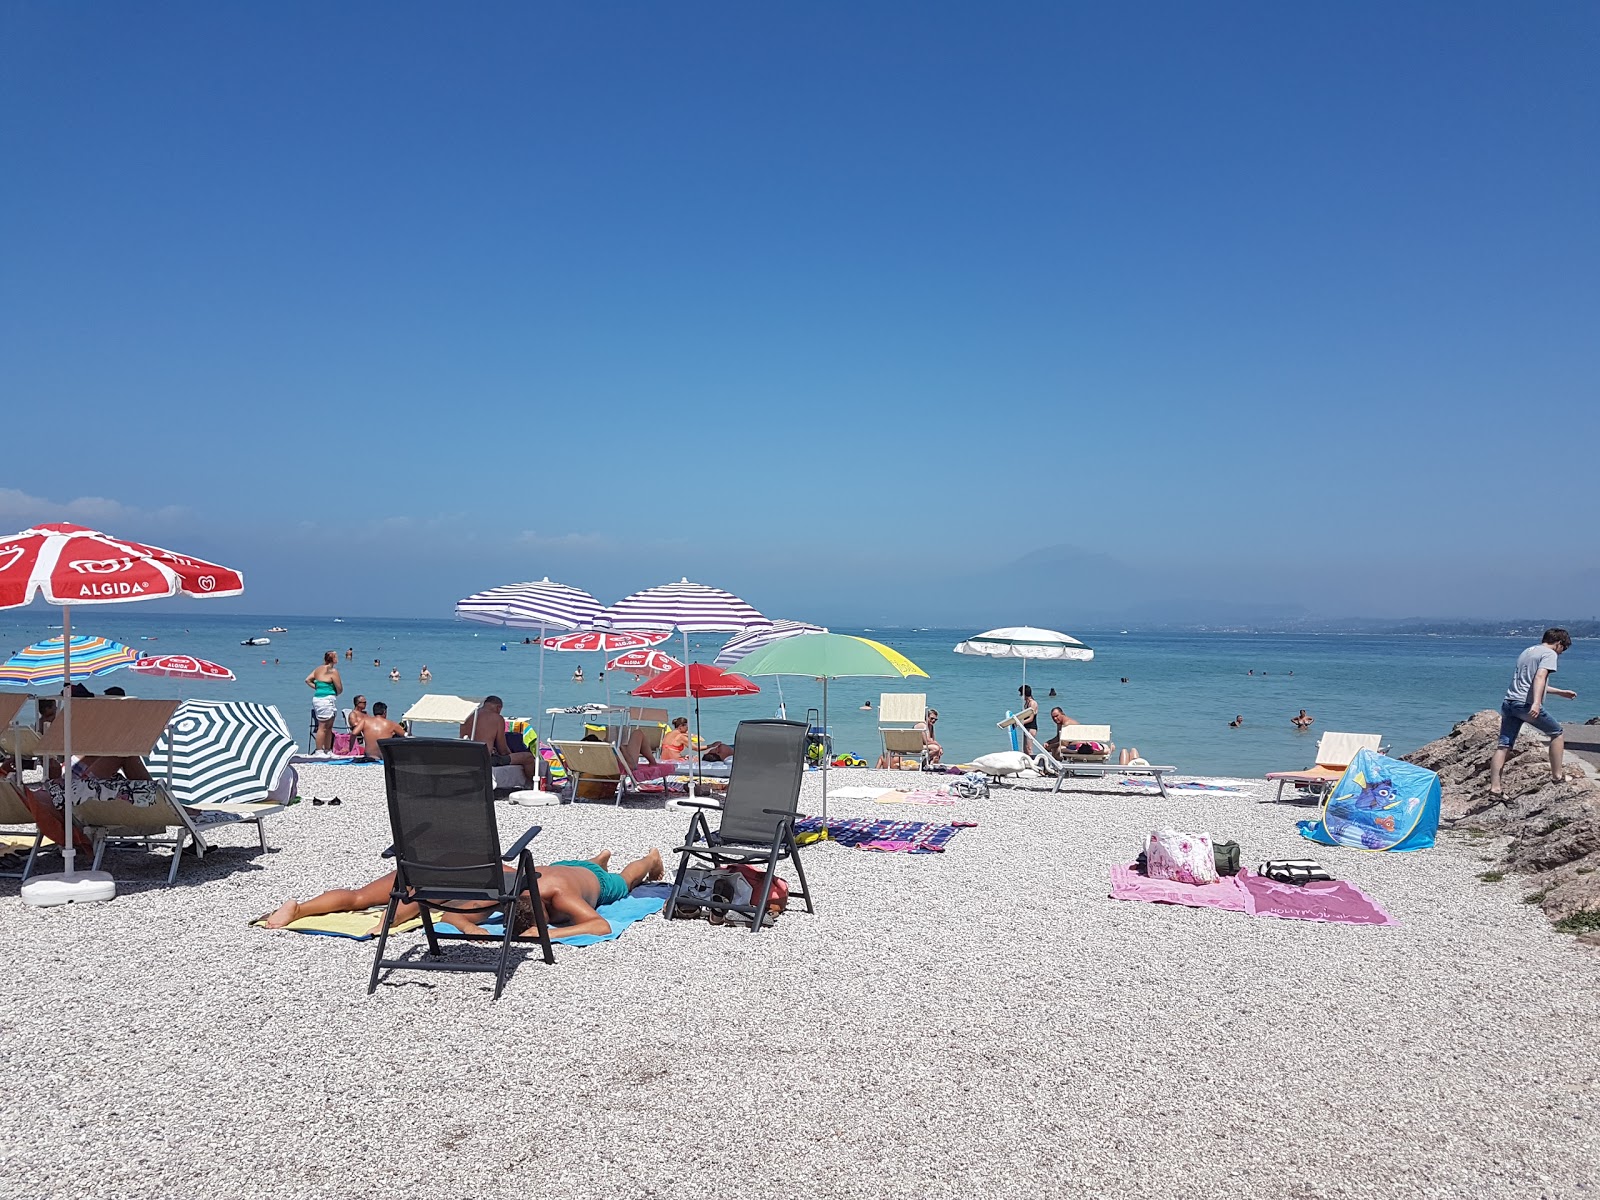 Spiaggia Dei Capuccini的照片 带有碧绿色水表面